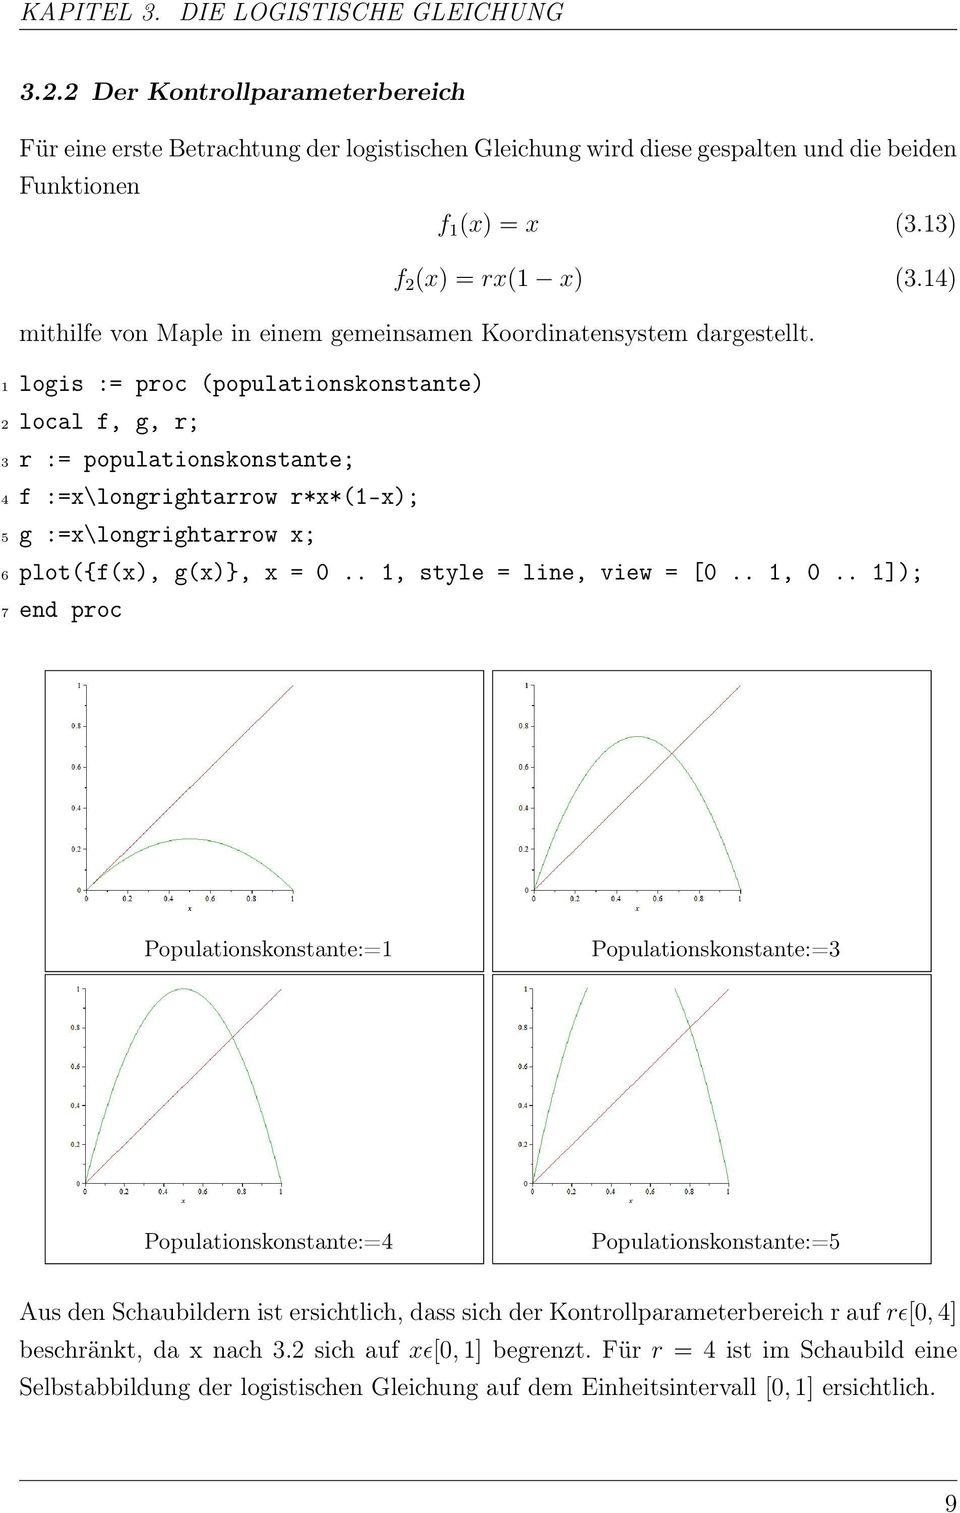 1 logis := proc (populationskonstante) 2 local f, g, r; 3 r := populationskonstante; 4 f :=x\longrightarrow r*x*(1-x); 5 g :=x\longrightarrow x; 6 plot({f(x), g(x)}, x = 0.. 1, style = line, view = [0.